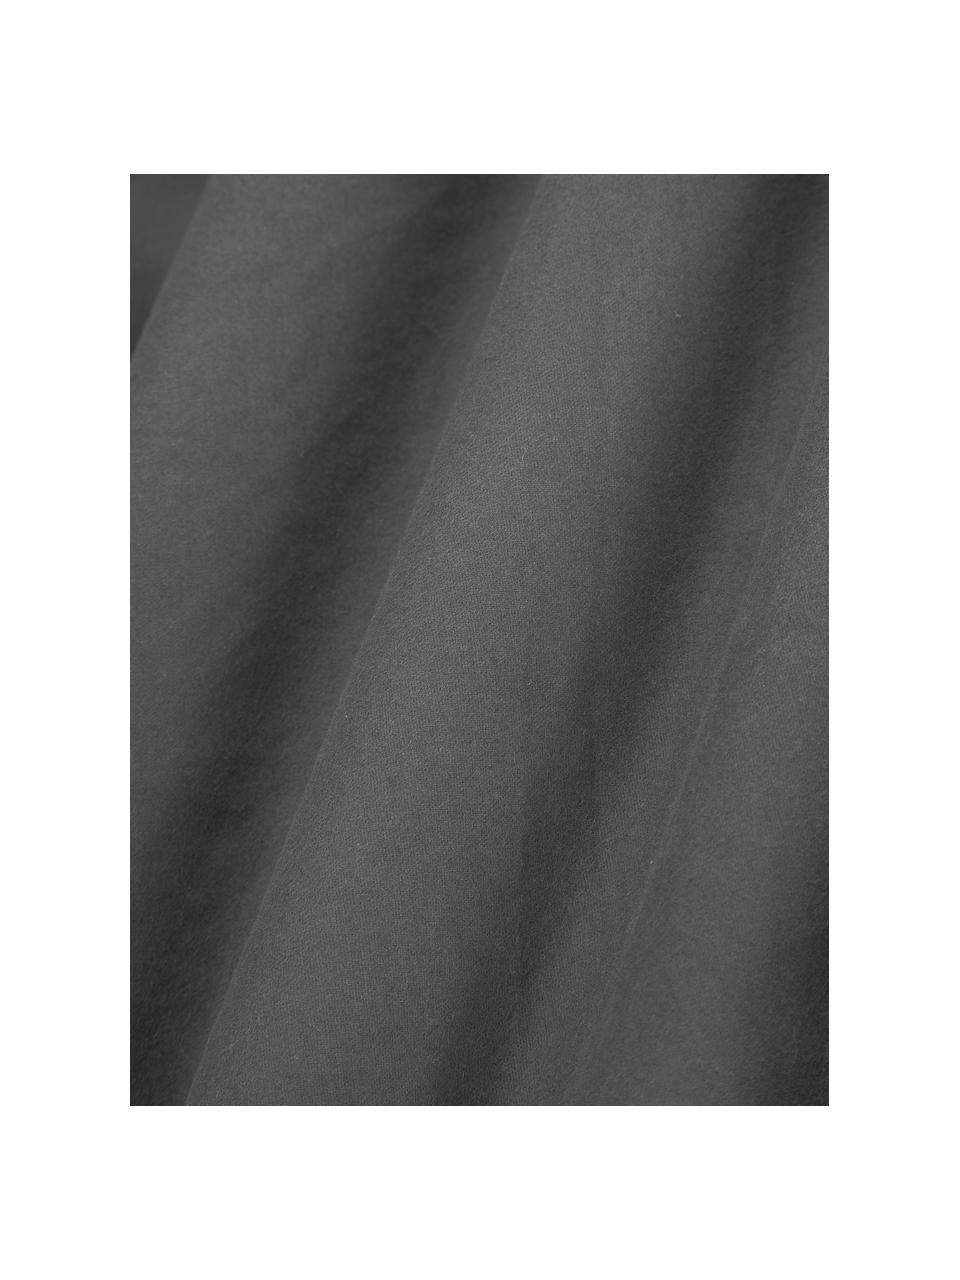 Hoeslaken Biba, flanel, Weeftechniek: flanel Flanel is een knuf, Antraciet, B 200 x L 200 cm, H 25 cm